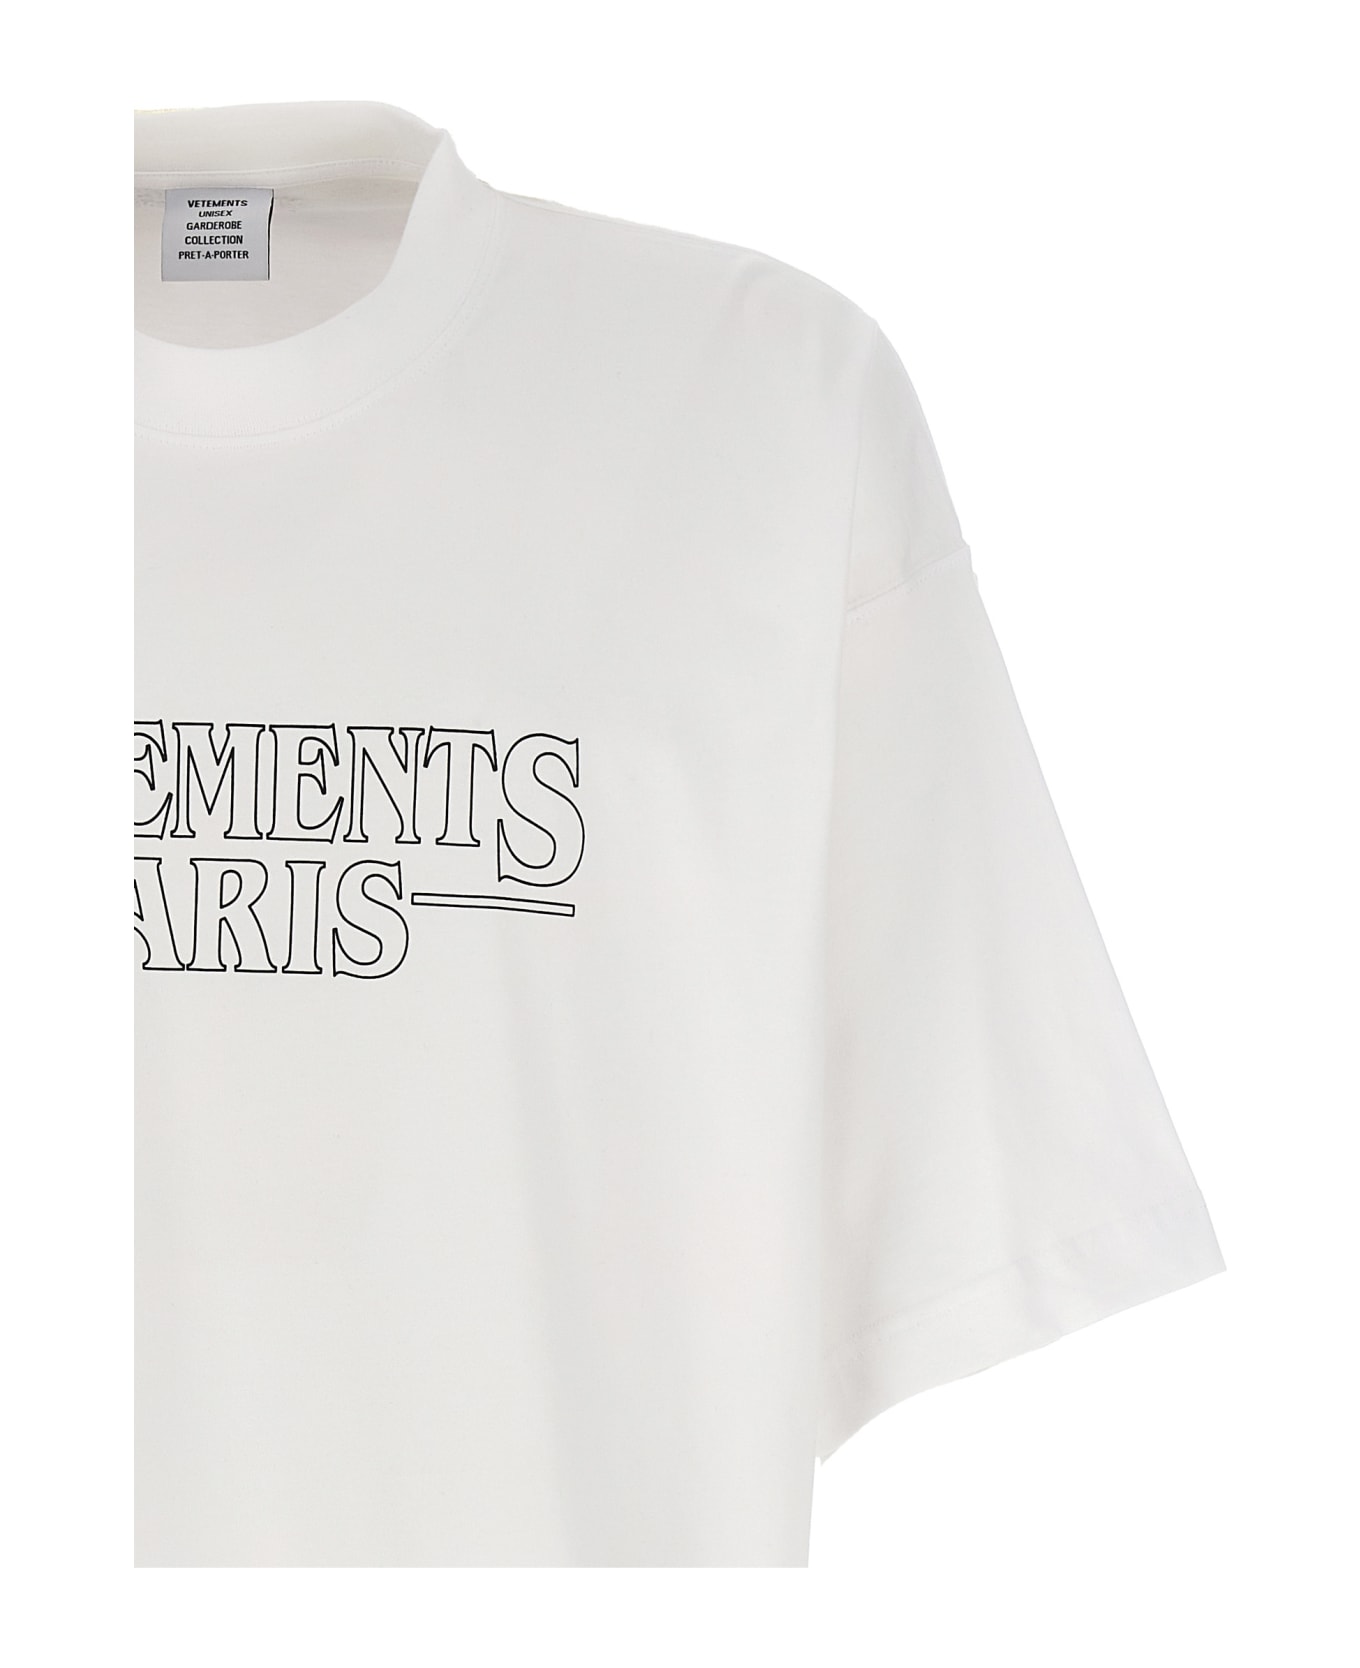 VETEMENTS Logo T-shirt - White